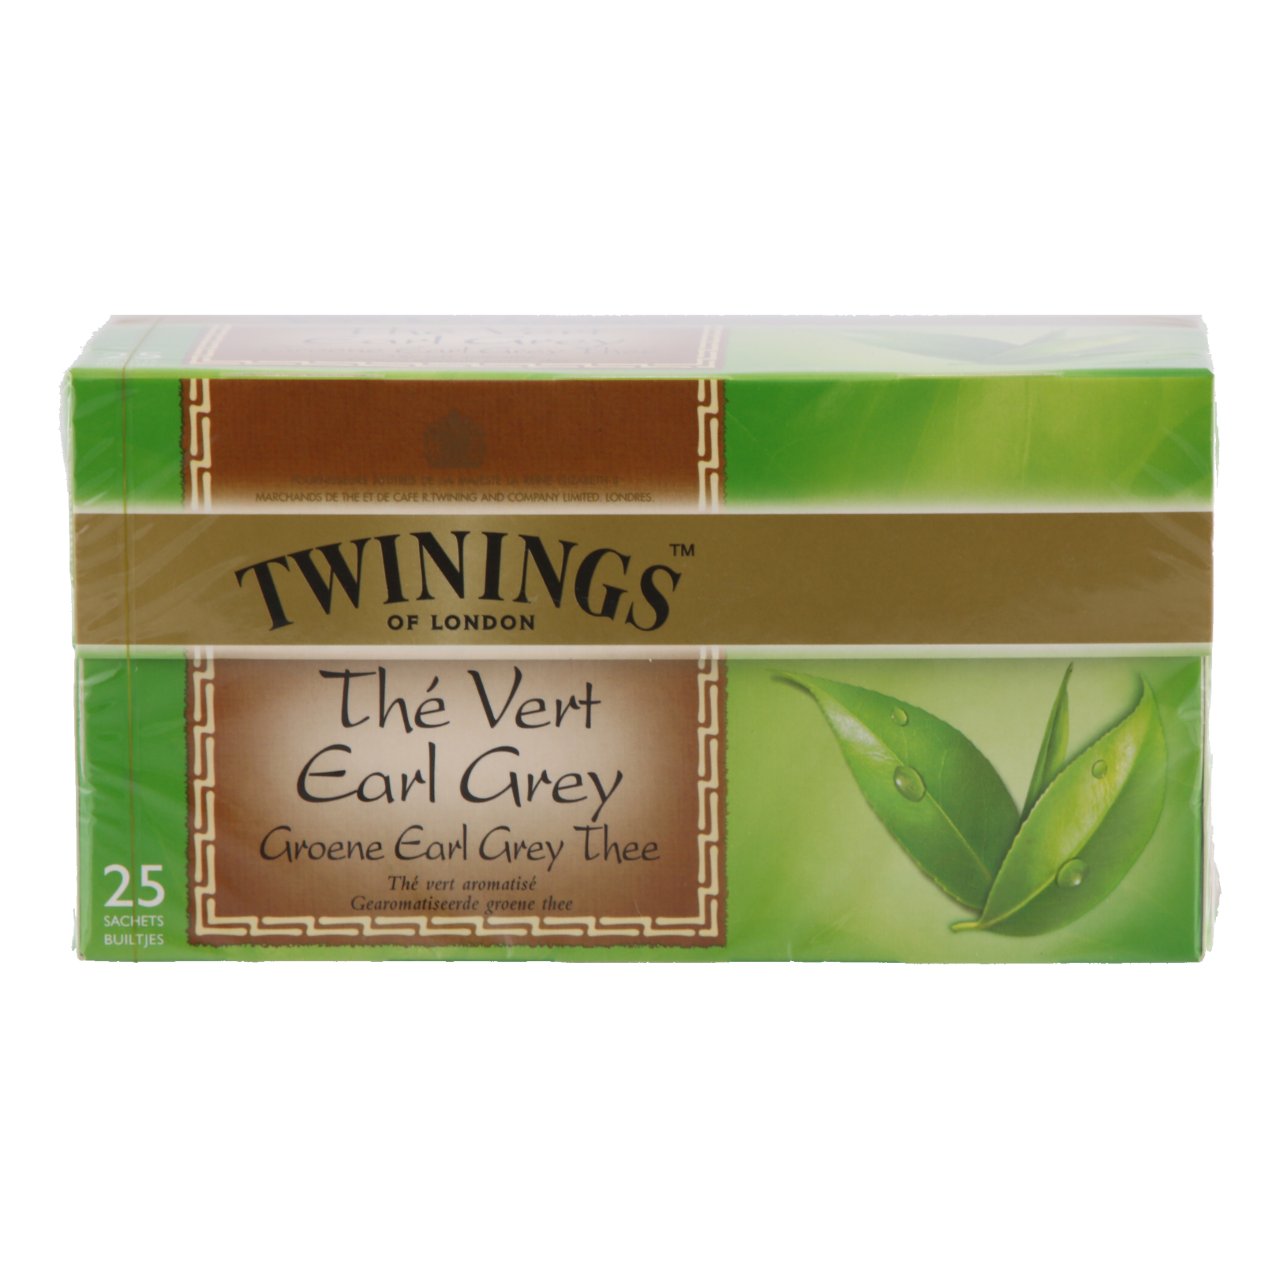 Groene earl grey thee